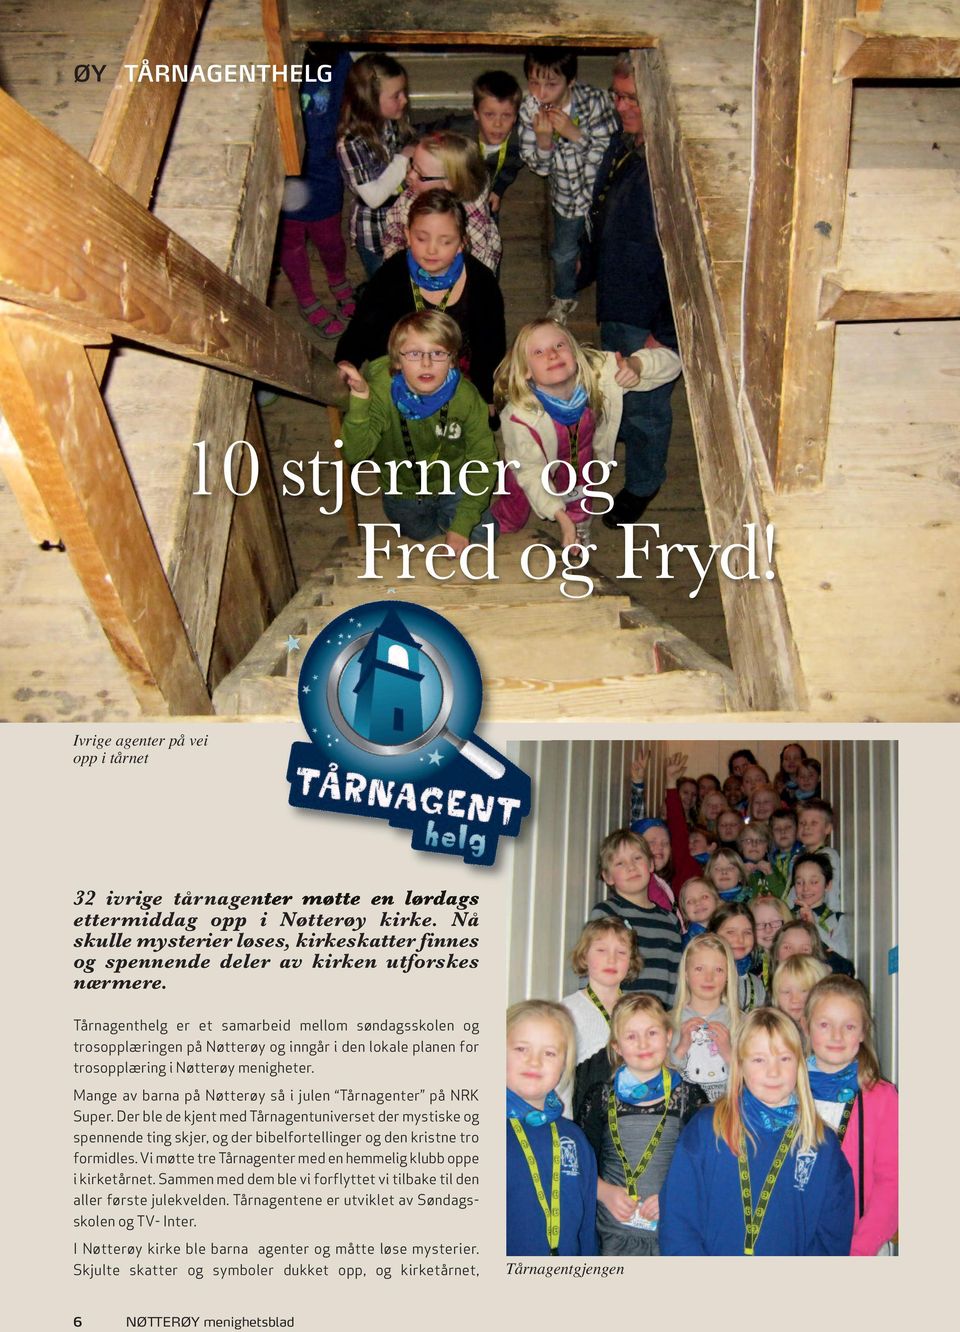 Tårnagenthelg er et samarbeid mellom søndagsskolen og trosopplæringen på Nøtterøy og inngår i den lokale planen for trosopplæring i Nøtterøy menigheter.